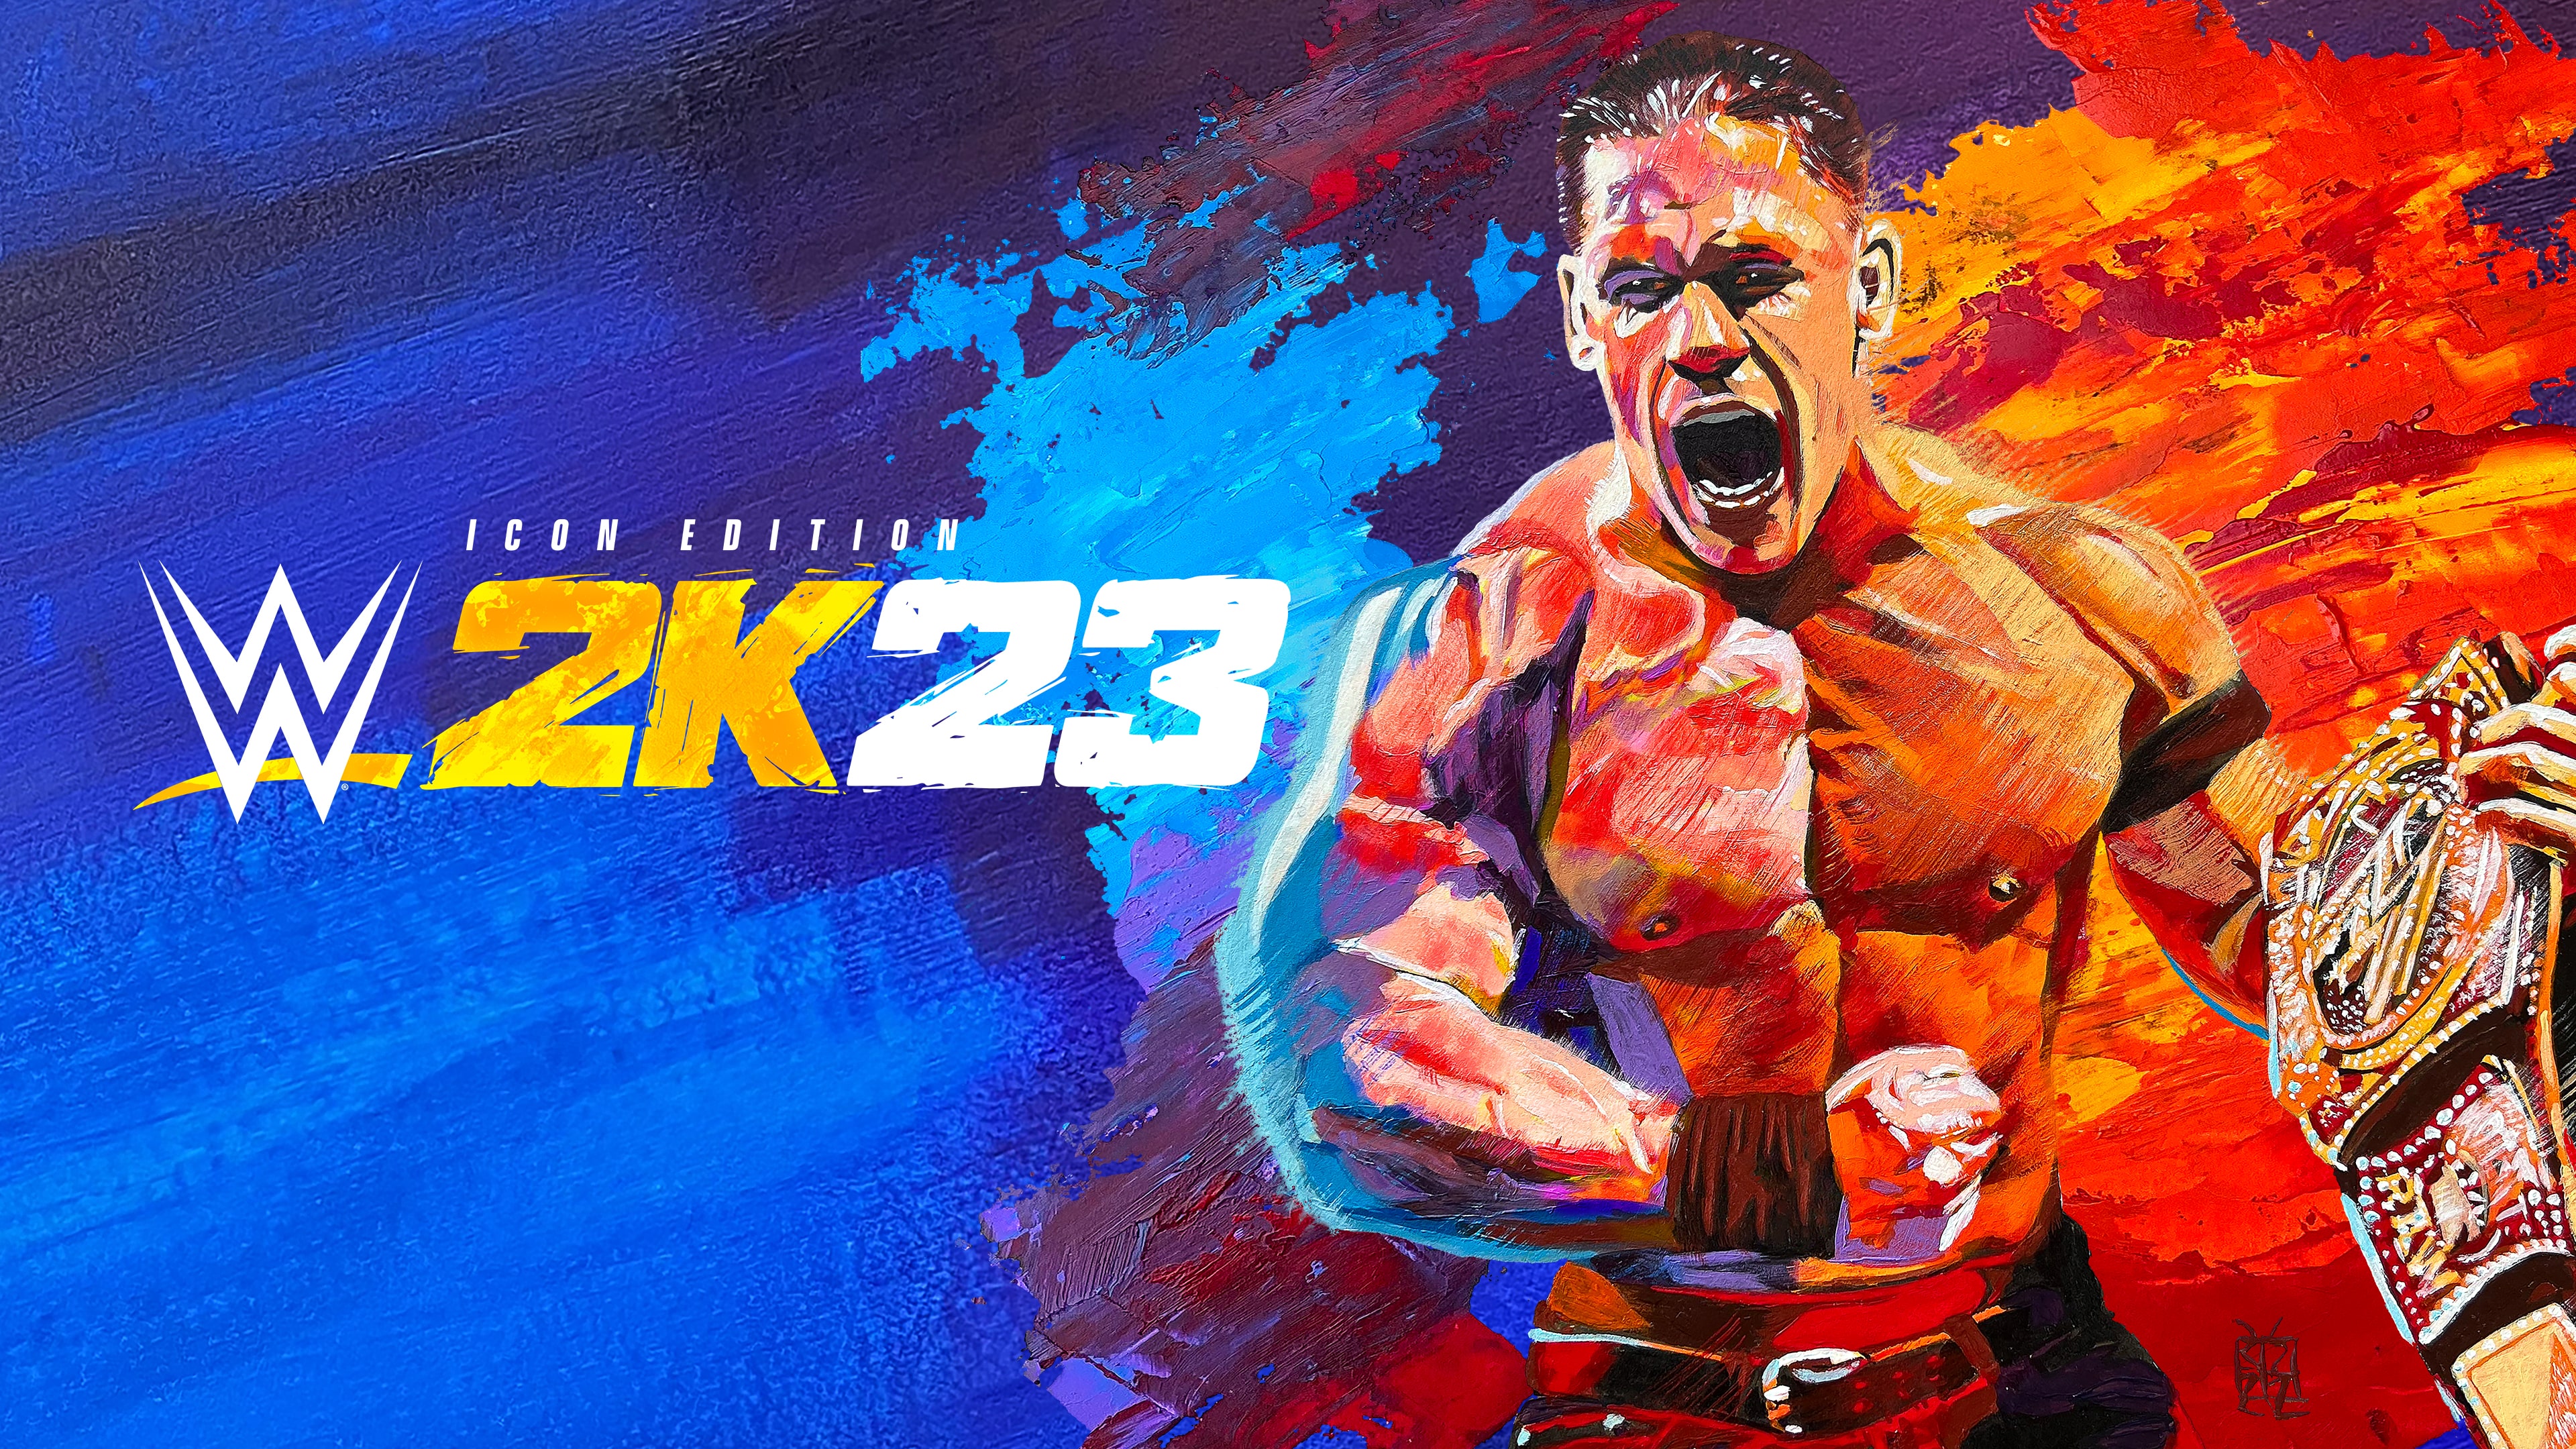 PS4 ゲーム - WWE 2K23 - アジア